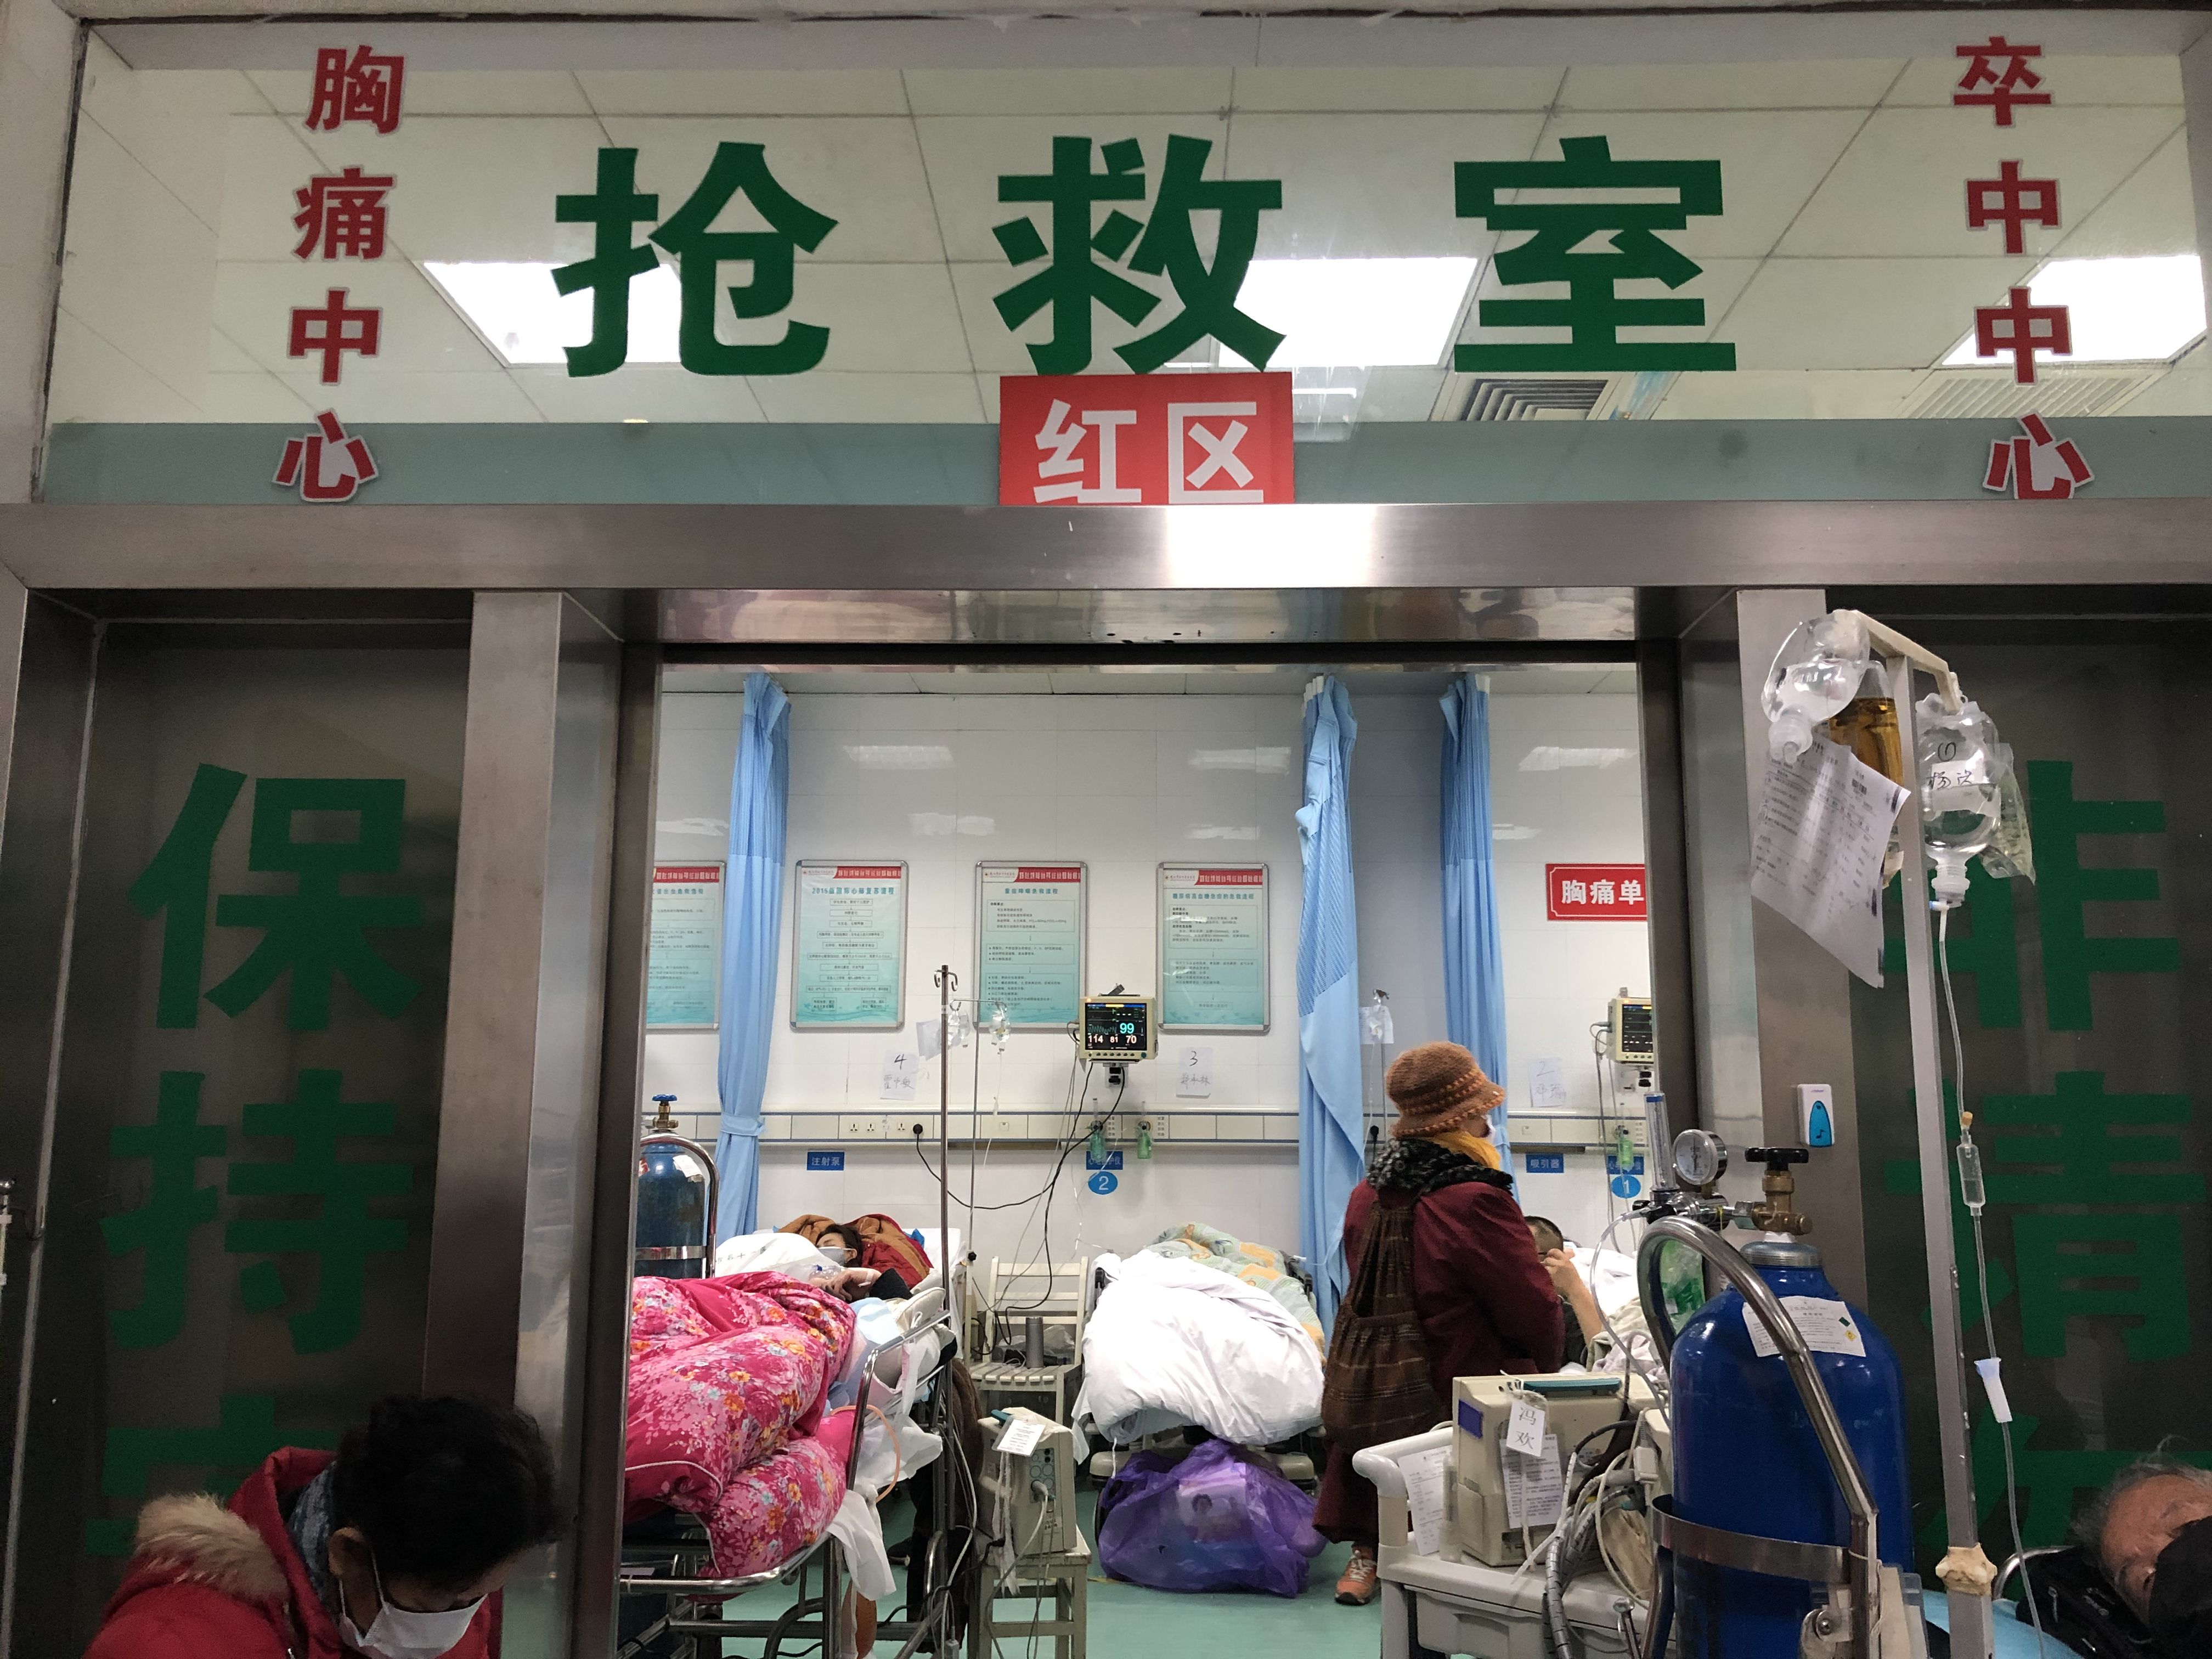 红十字会医院的抢救室门上标着红区新京报记者 向凯 摄